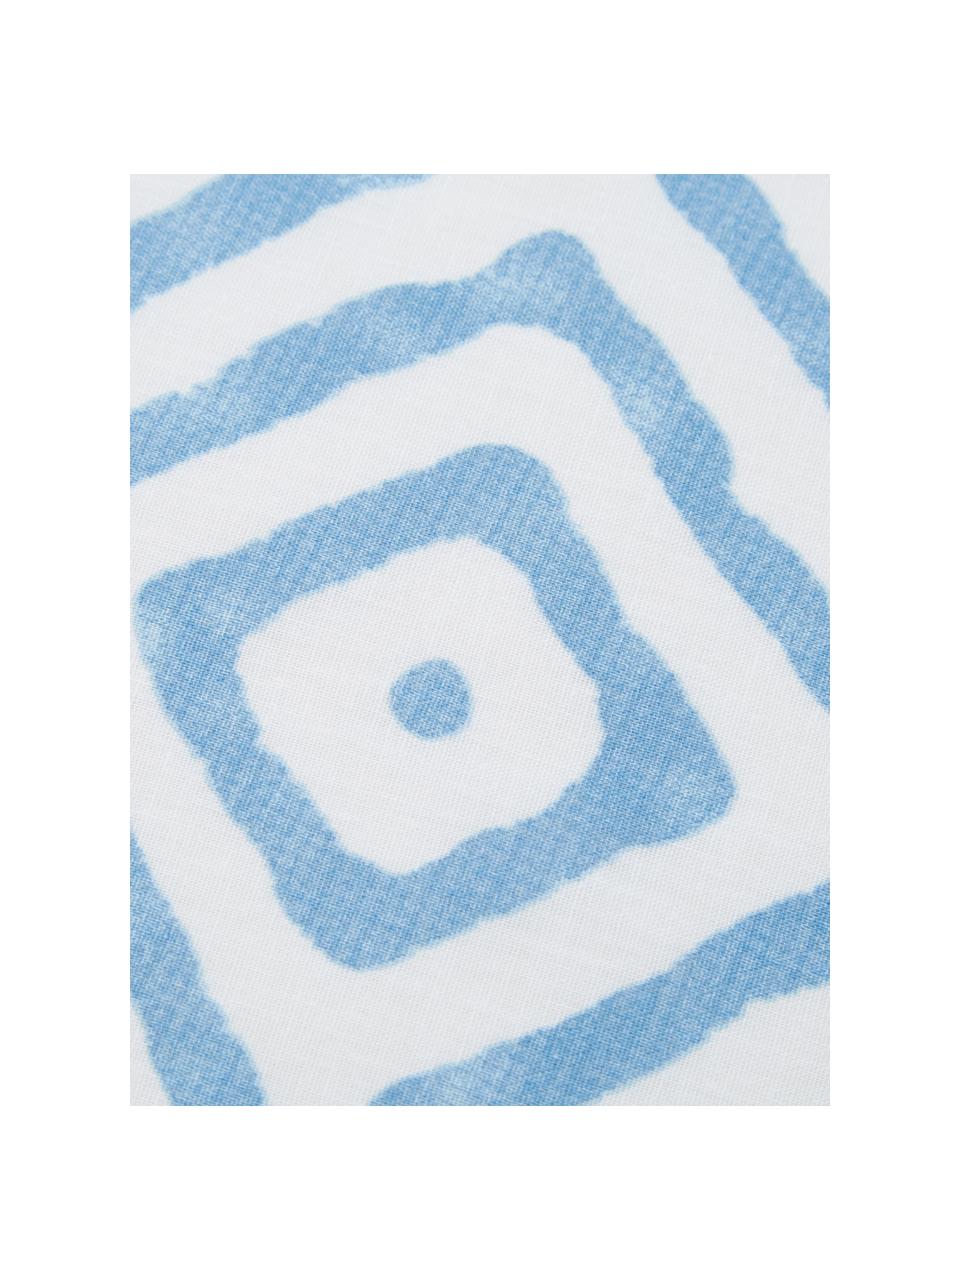 Dwustronna pościel z bawełny Get Framed, 100% bawełna
Produkt wykonany jest z bawełny, jest przyjemnie miękki, dobrze wchłania wilgoć i przeznaczony jest dla alergików, Jasnoniebieski, biały, 135 x 200 cm + 1 poduszka 80 x 80 cm